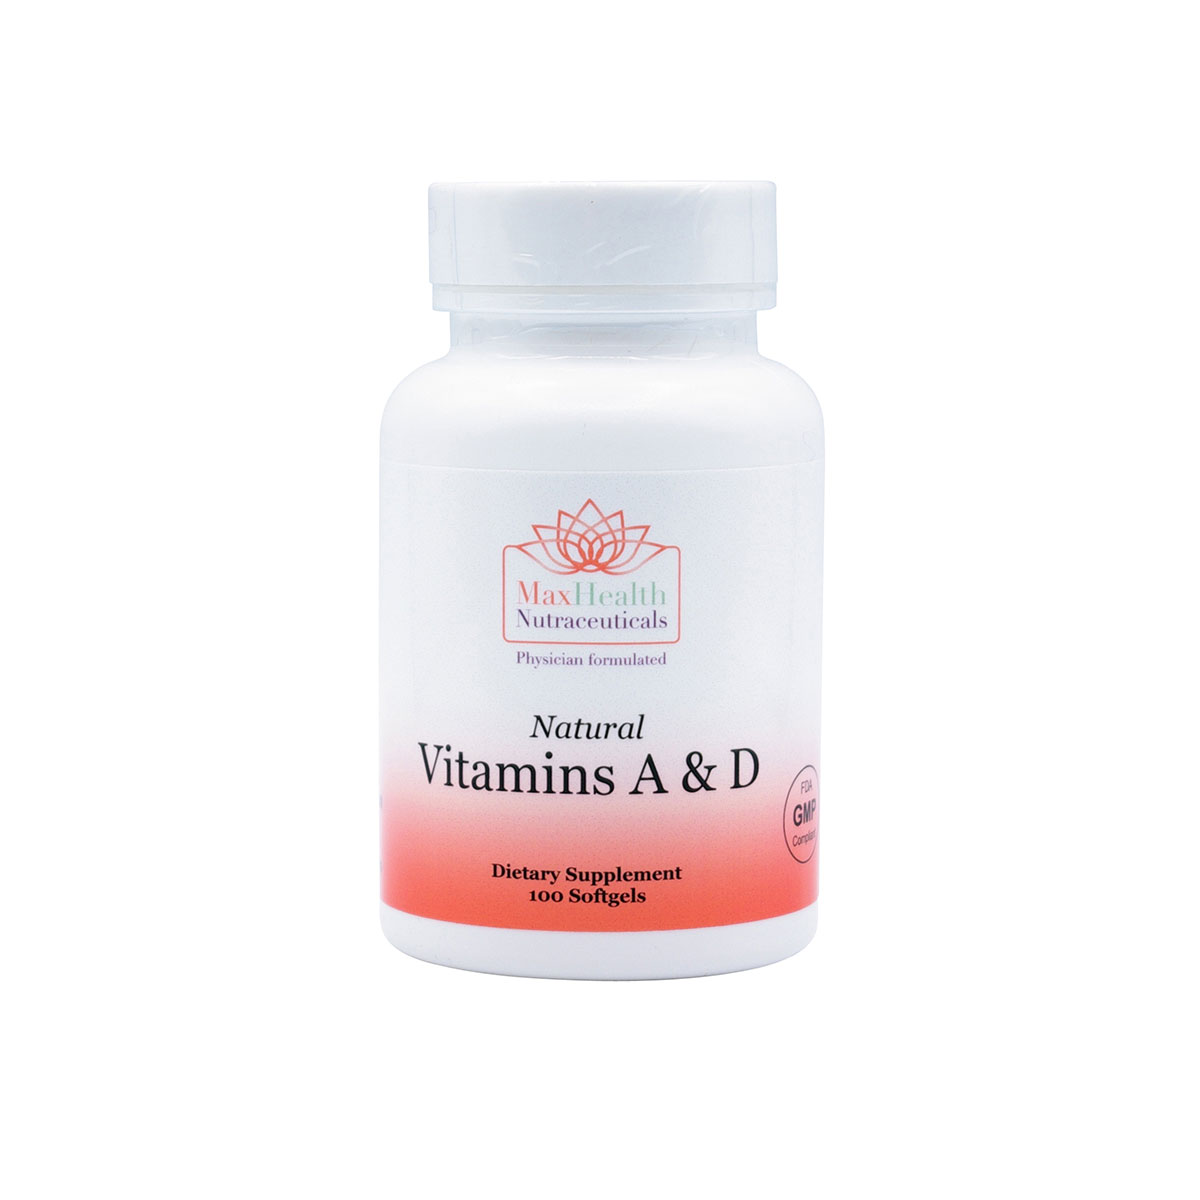 11Natural Vitamins A and D Softgels